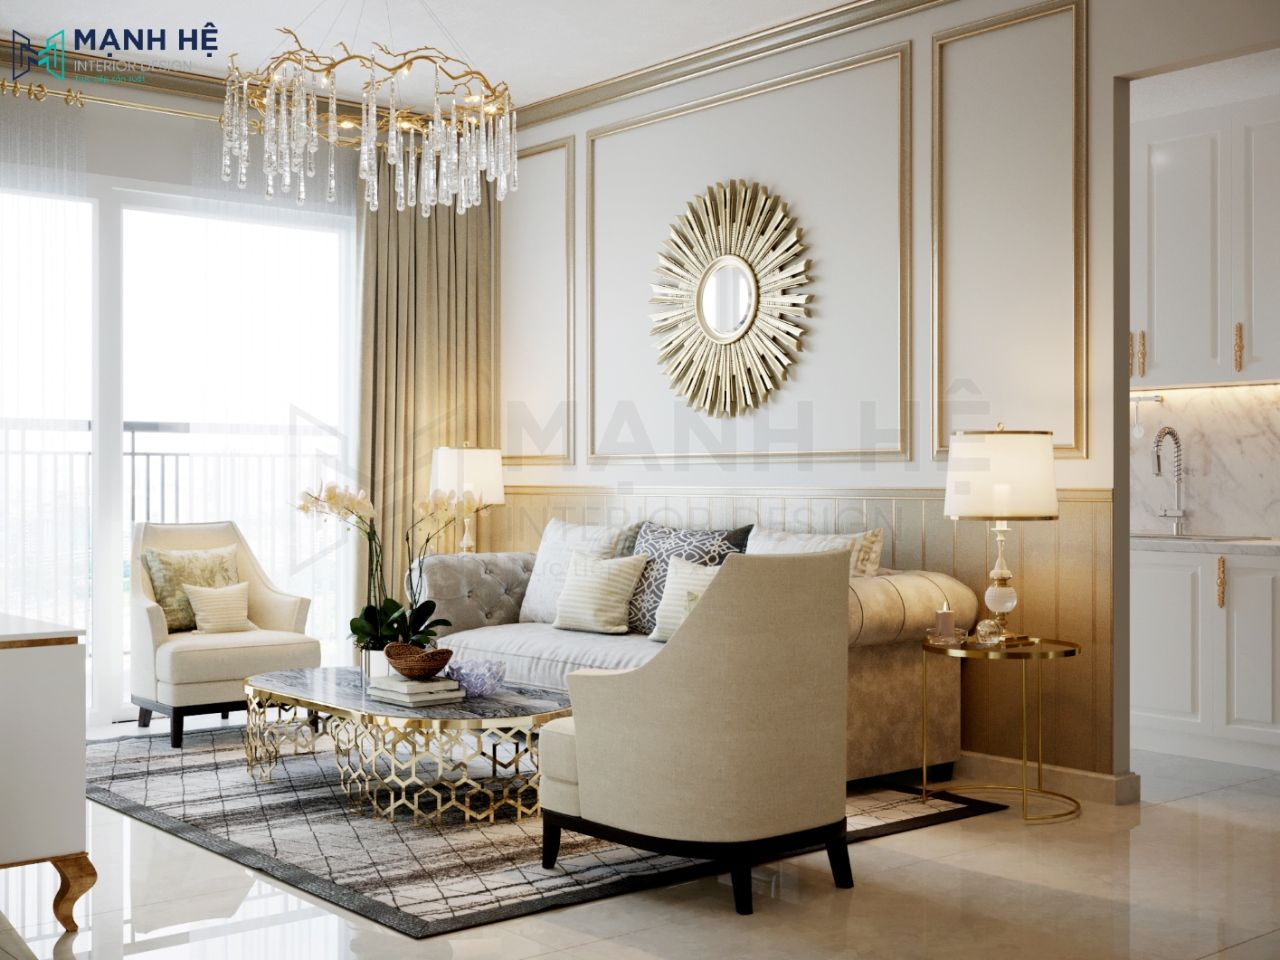 Thiết kế phòng khách theo phong cách tân cổ điển với những đường nét uốn lượn độc đáo